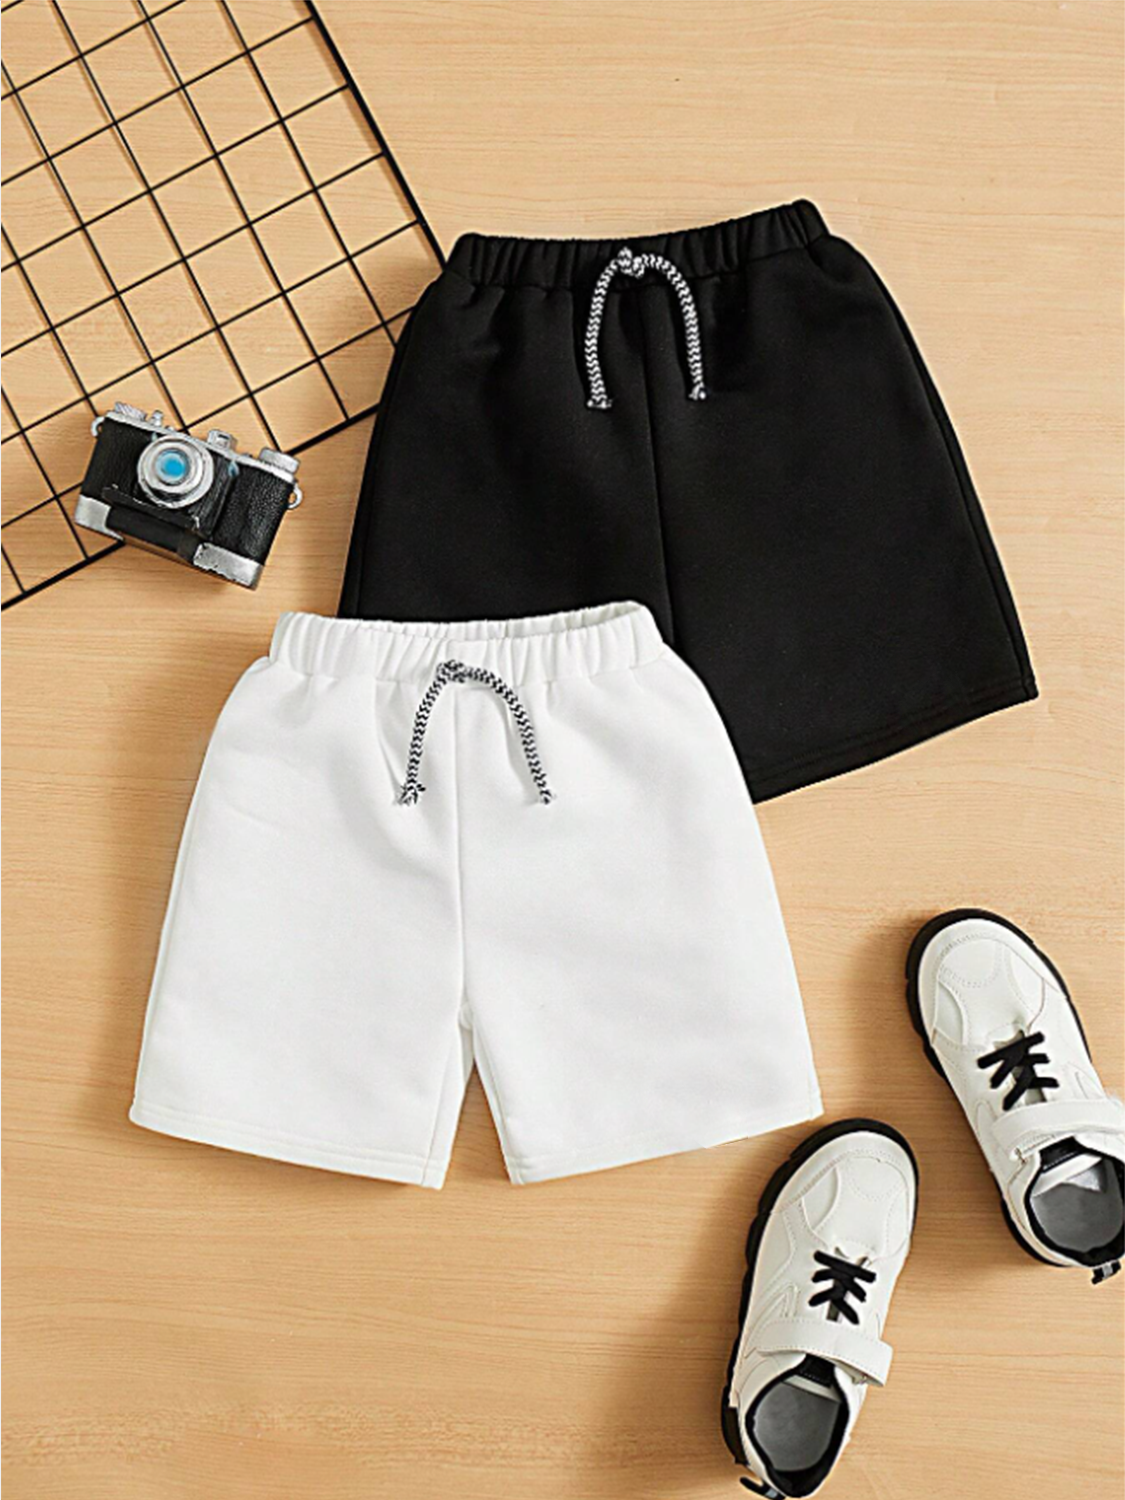 Pack of 2 Shorts For Kids (Black & White)